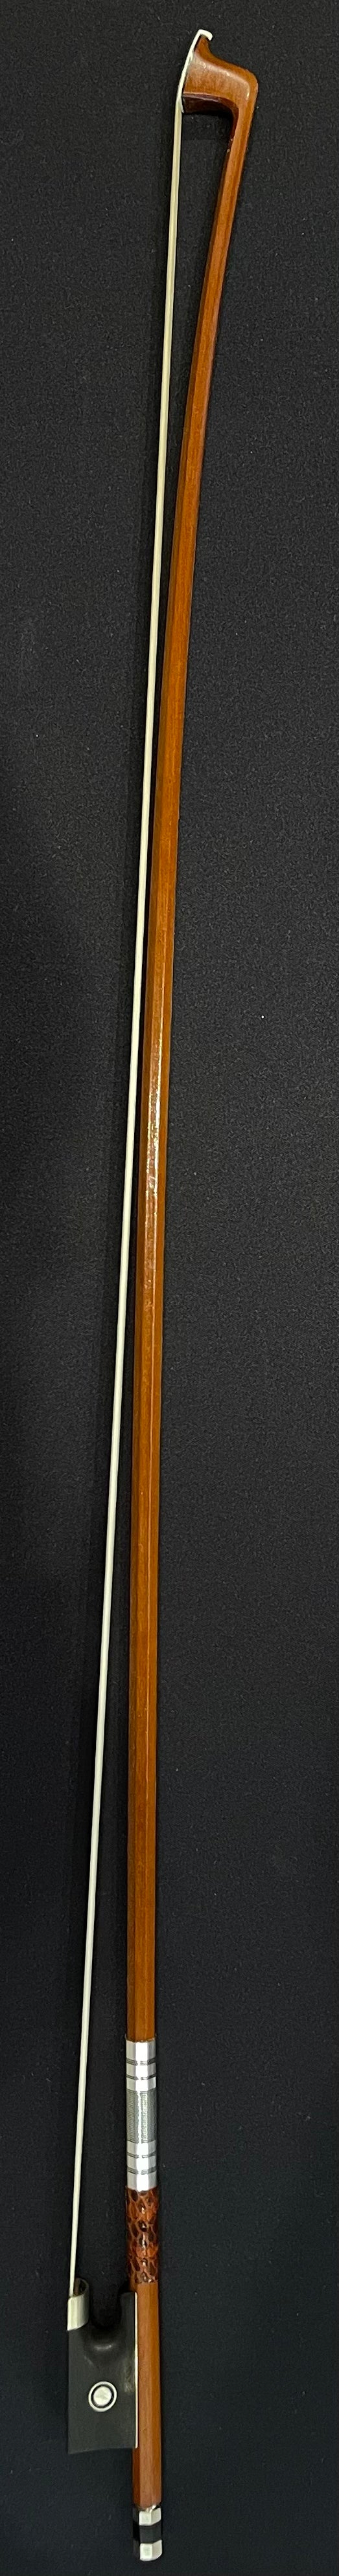 4/4 Violin Bow - EB08 Model